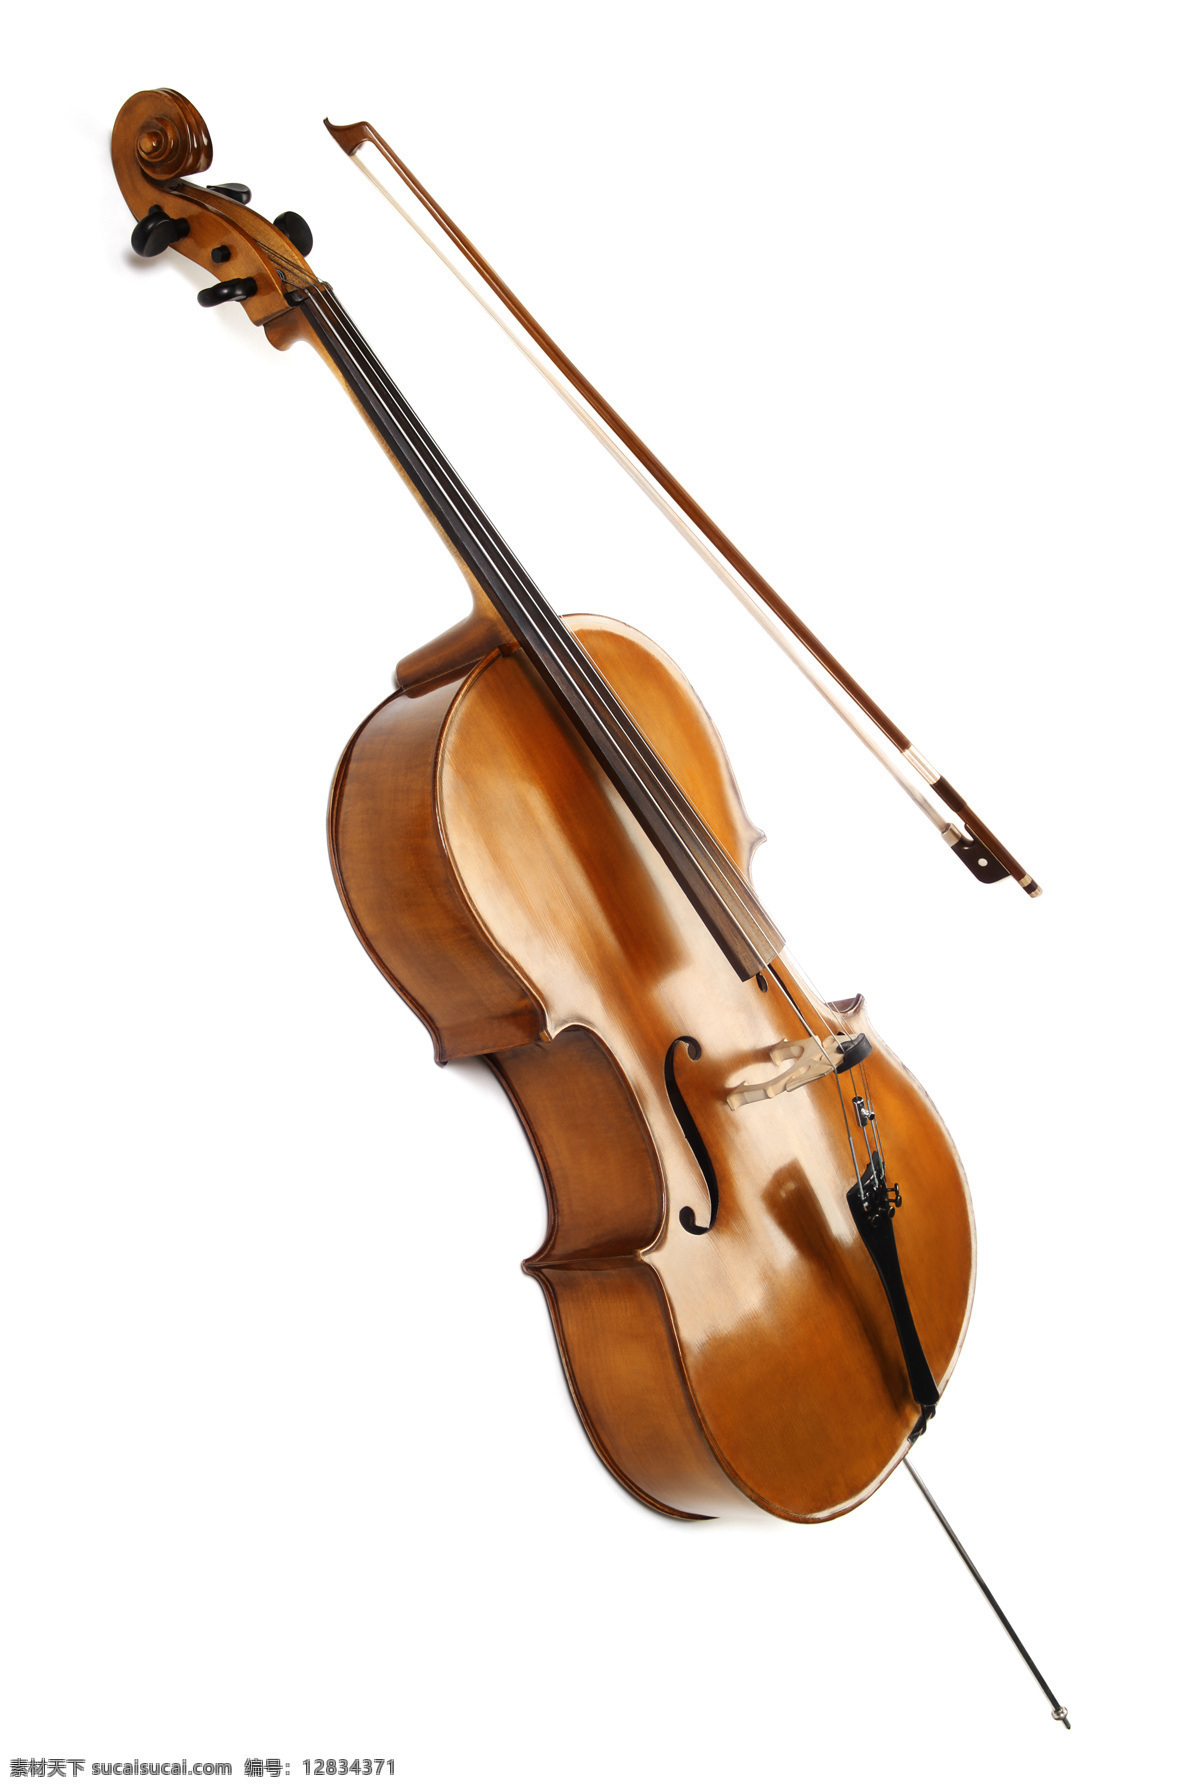 小提琴 乐器 西洋乐器 乐器摄影 音乐器材 影音娱乐 生活百科